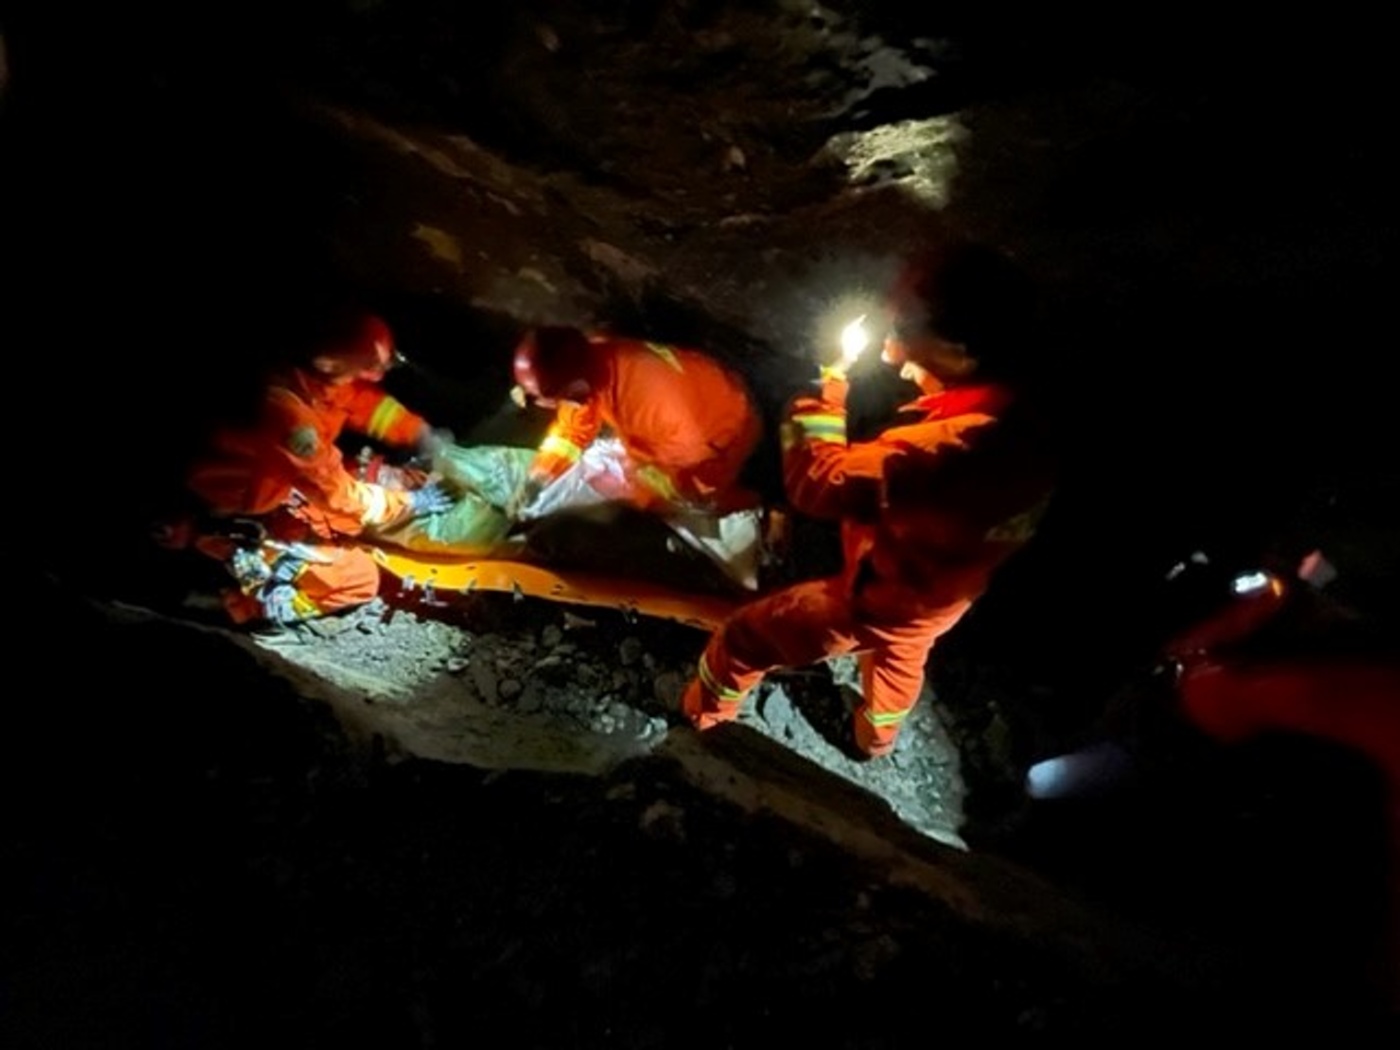 014-Výcvik kolínských lezců v podzemí.jpg